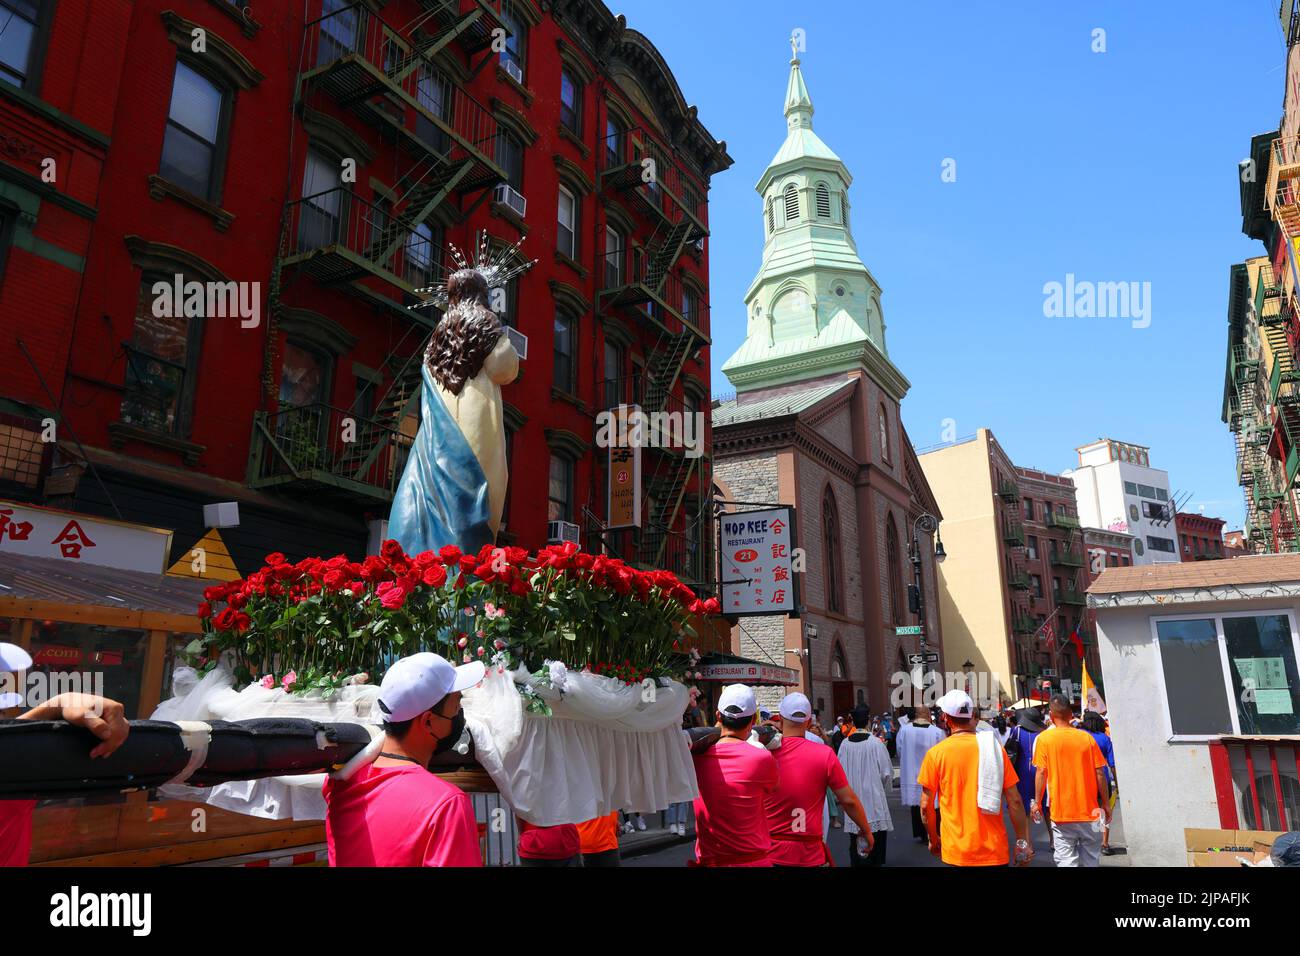 Les gens portent la Vierge Marie pendant la Fête de l'Assomption à l'église catholique romaine de Transfiguration dans le quartier chinois de Manhattan, New York, 14 août 2022 Banque D'Images